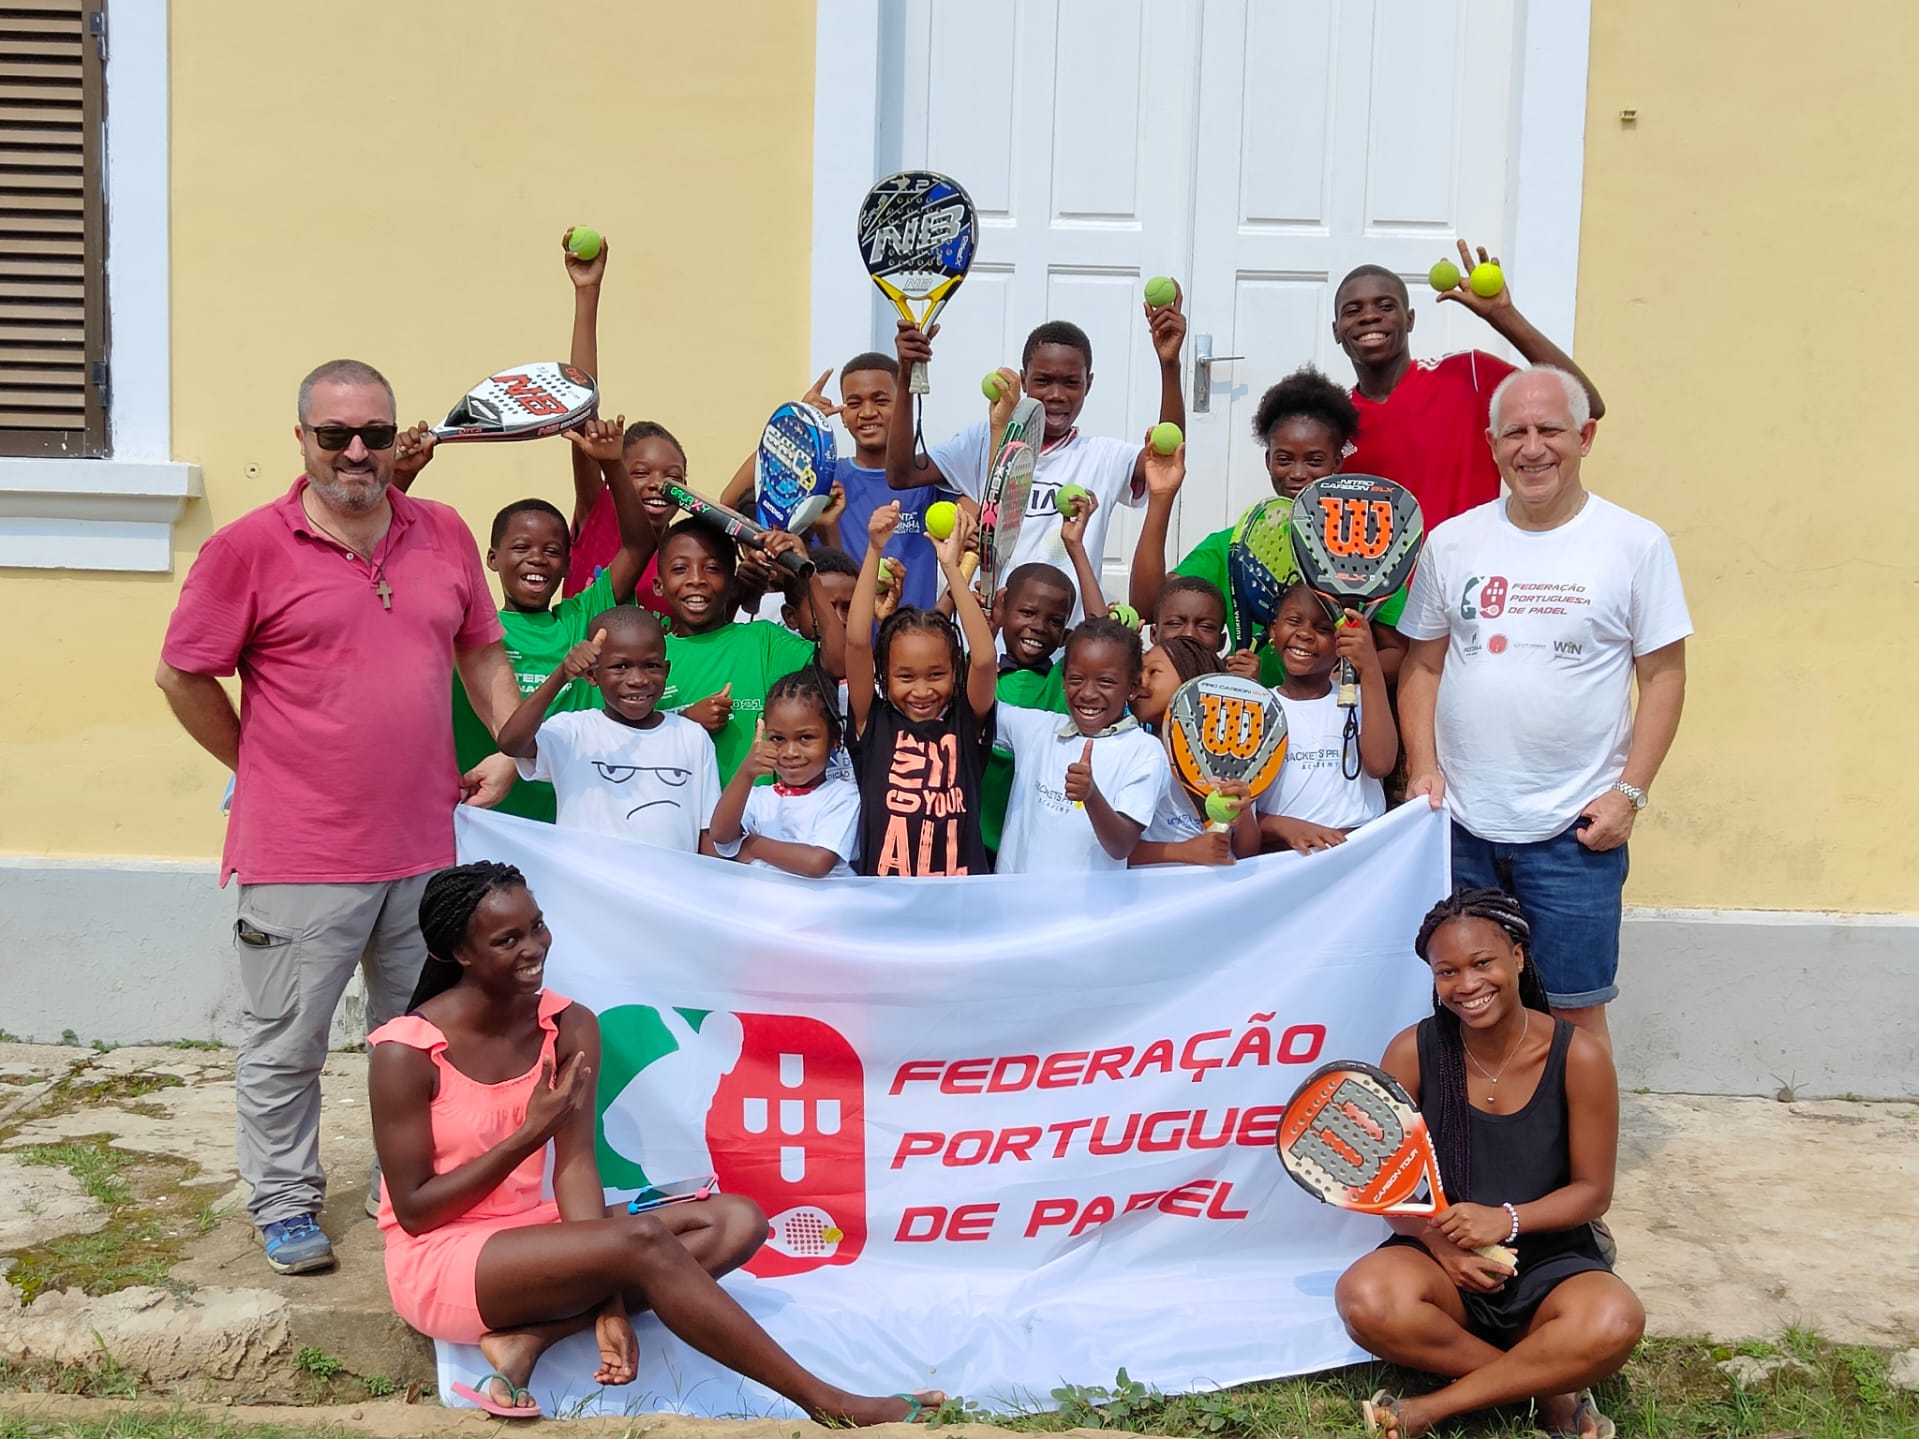 Det stora initiativet från den portugisiska federationen i Principe